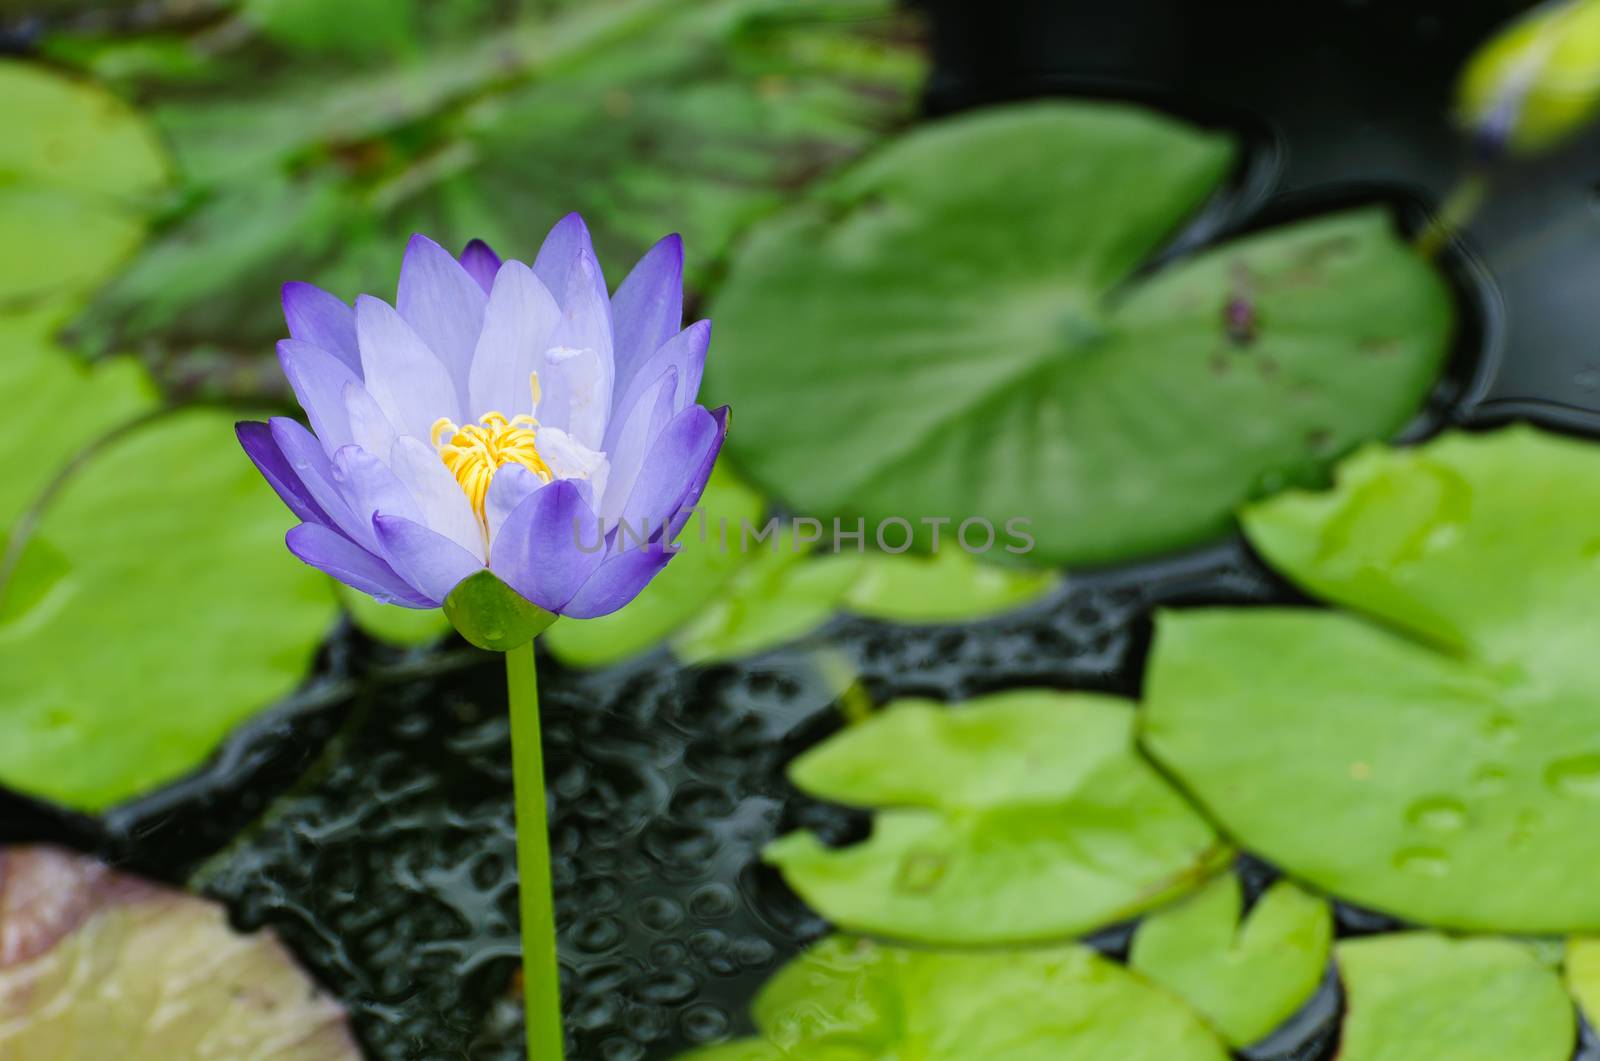 Purple lotus flower blooming at summer.